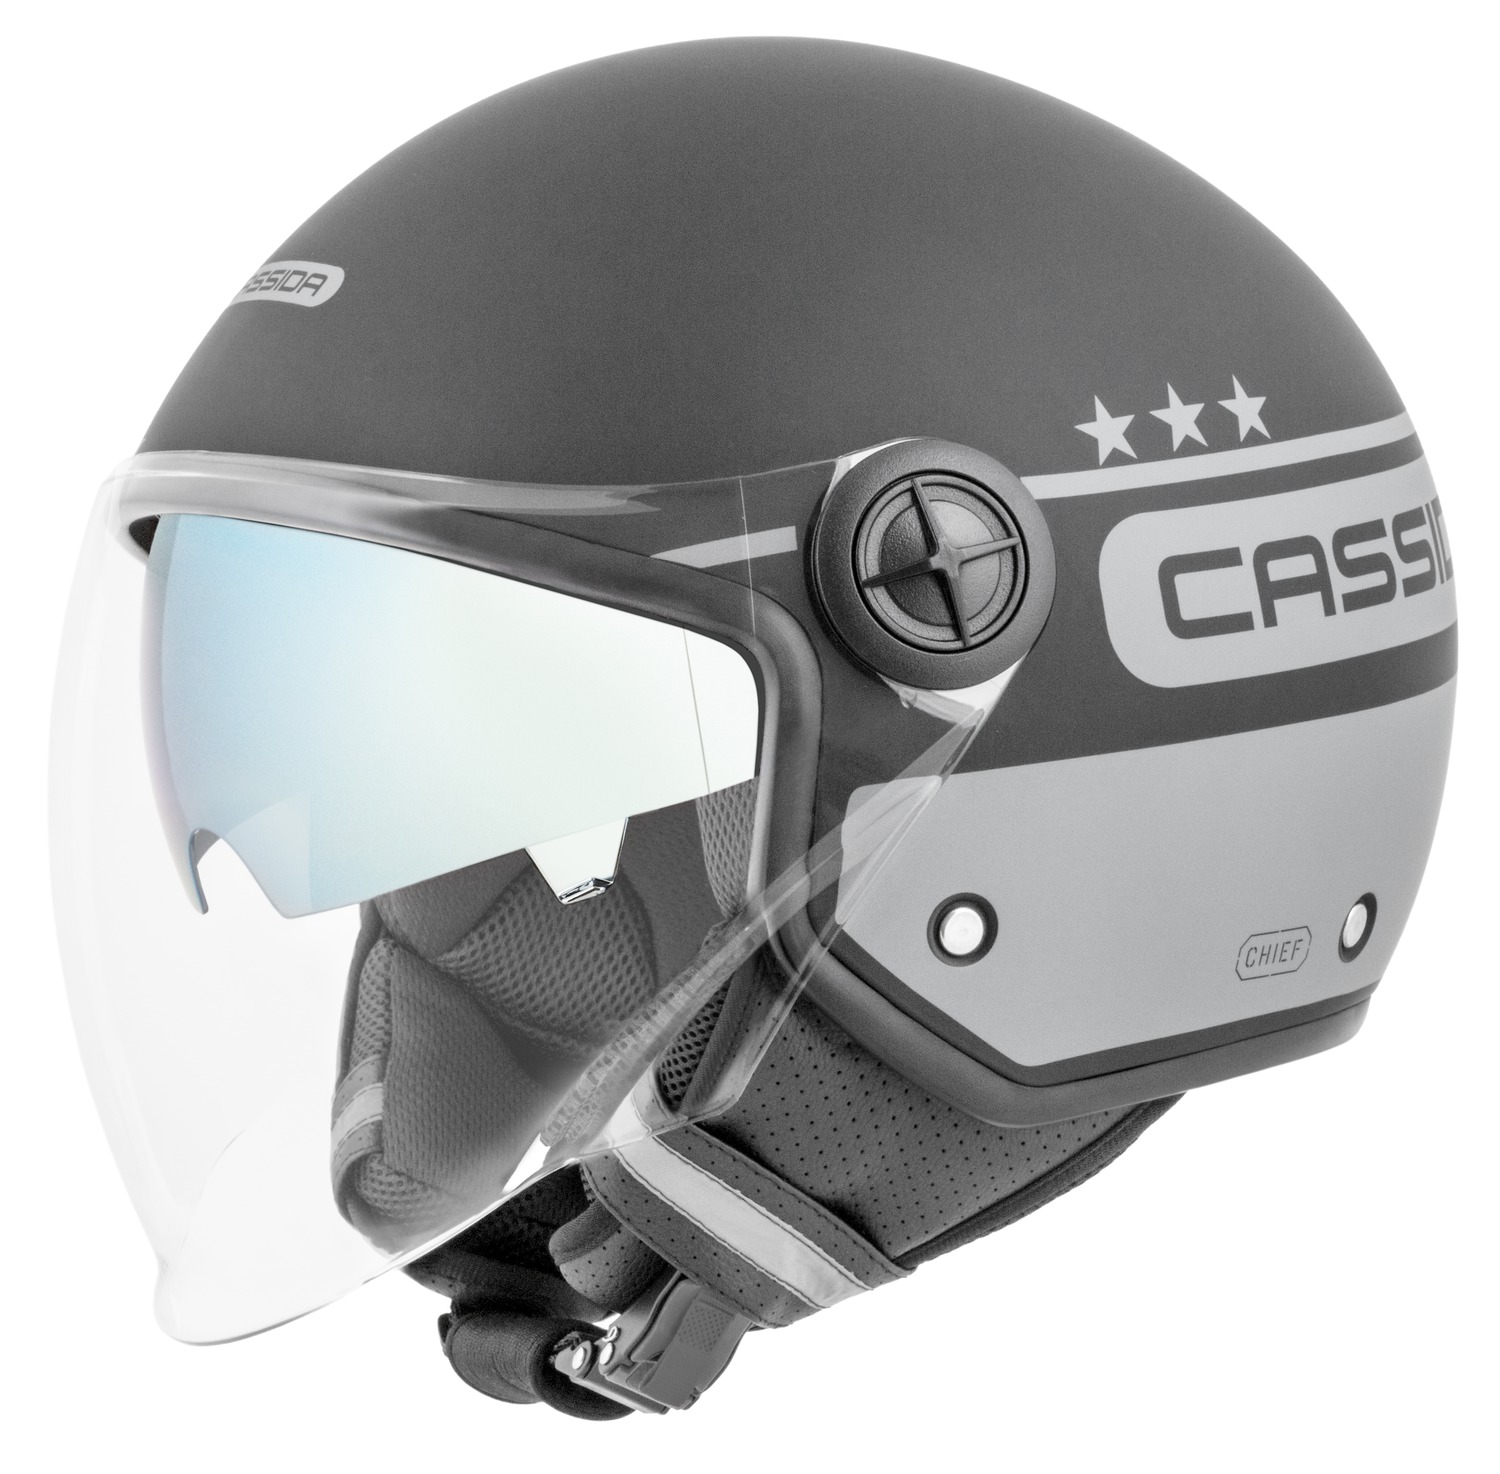 helmet Handy Plus Chief, CASSIDA (green matt/dark green) 2023